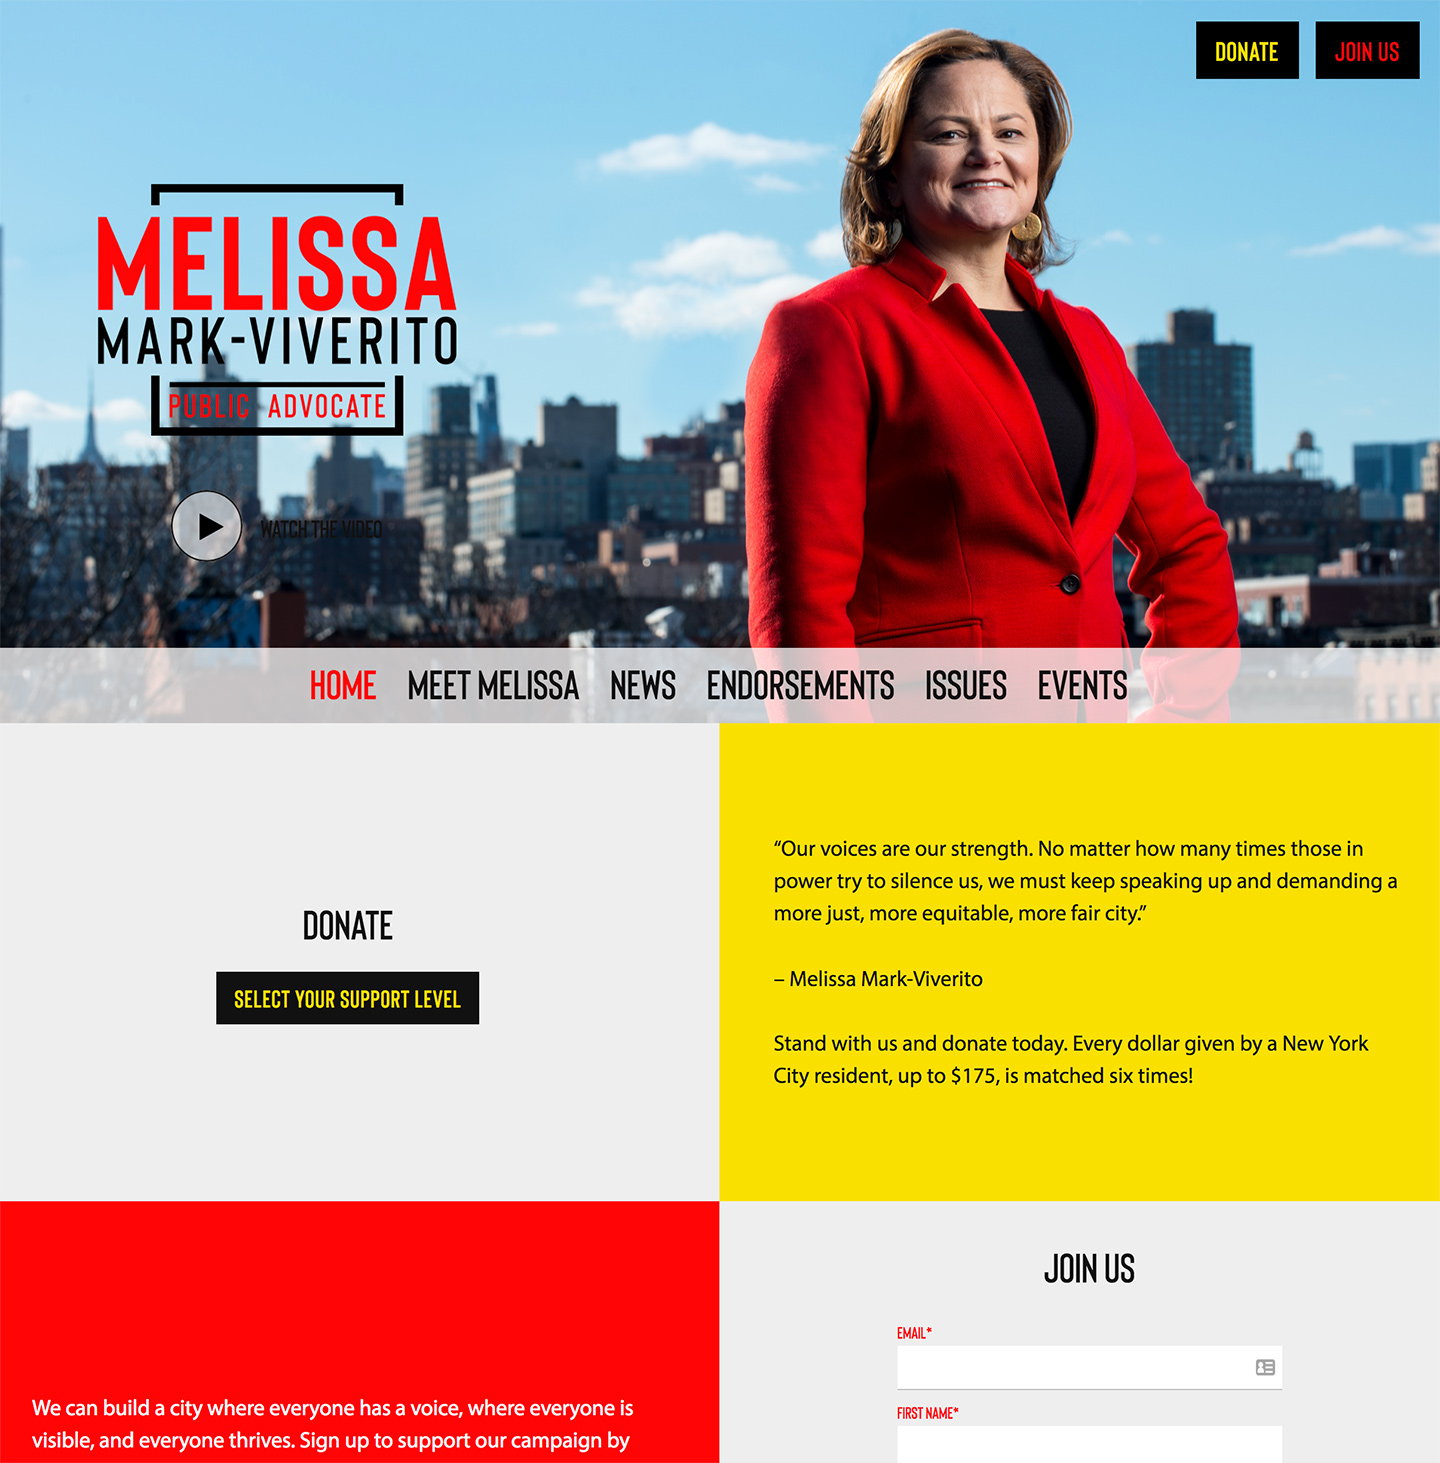 Melissa Mark-Viverito for Public Advocate: Action driven homepage